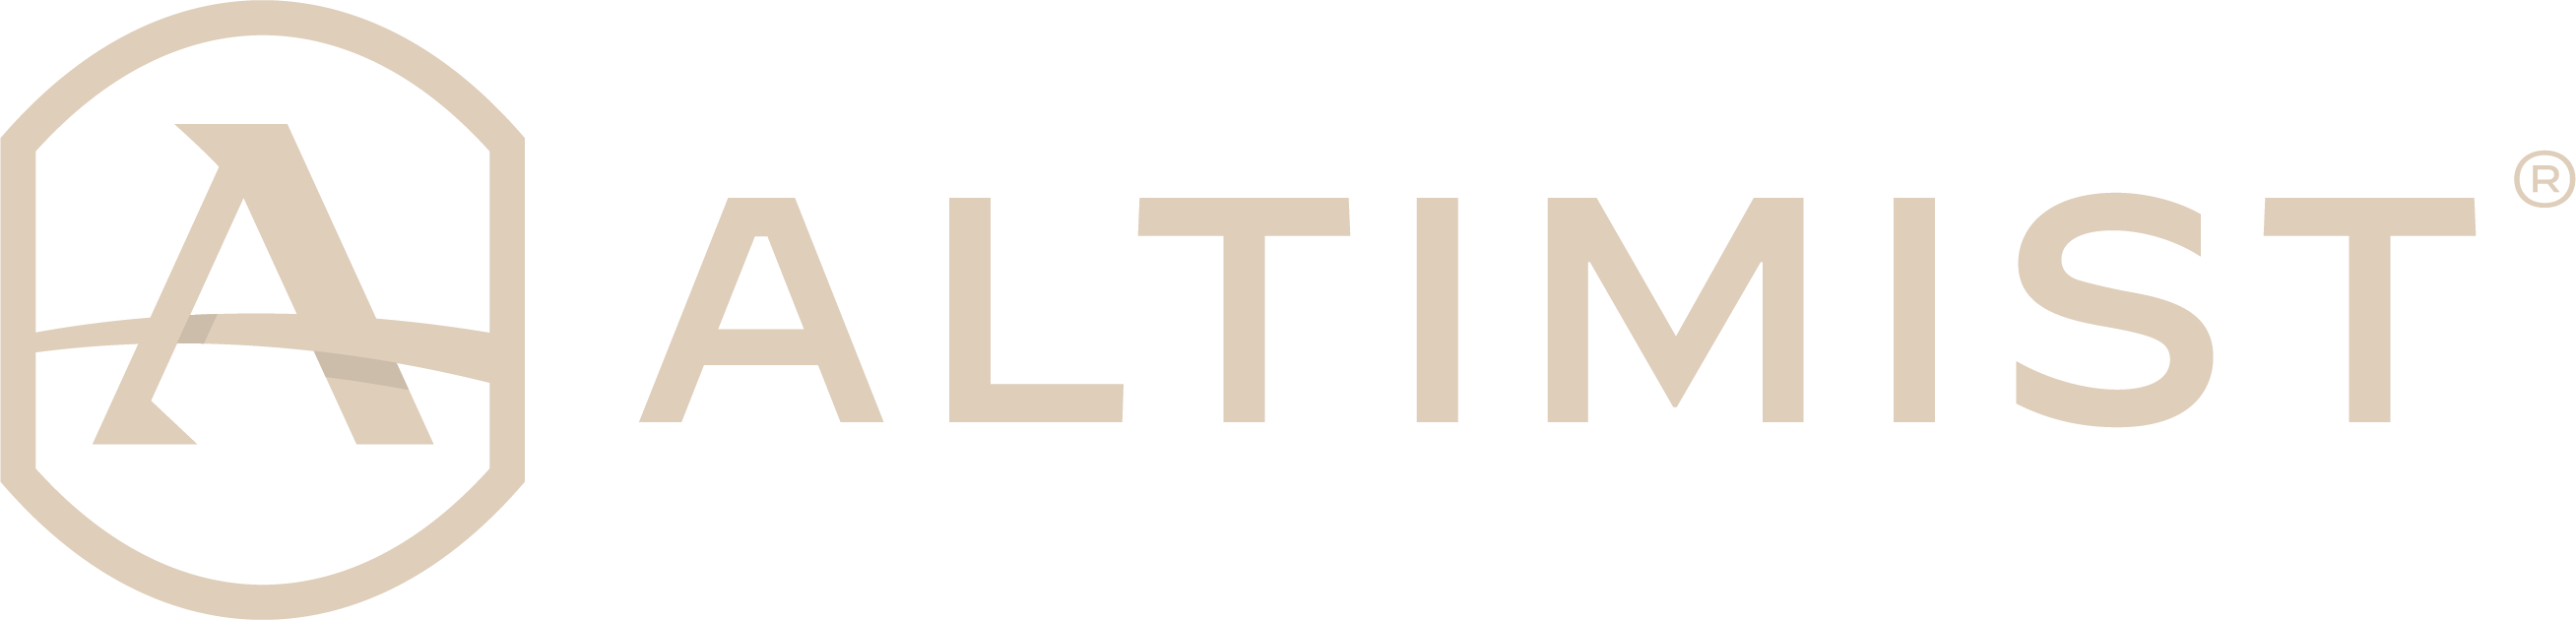 Altimist Logo